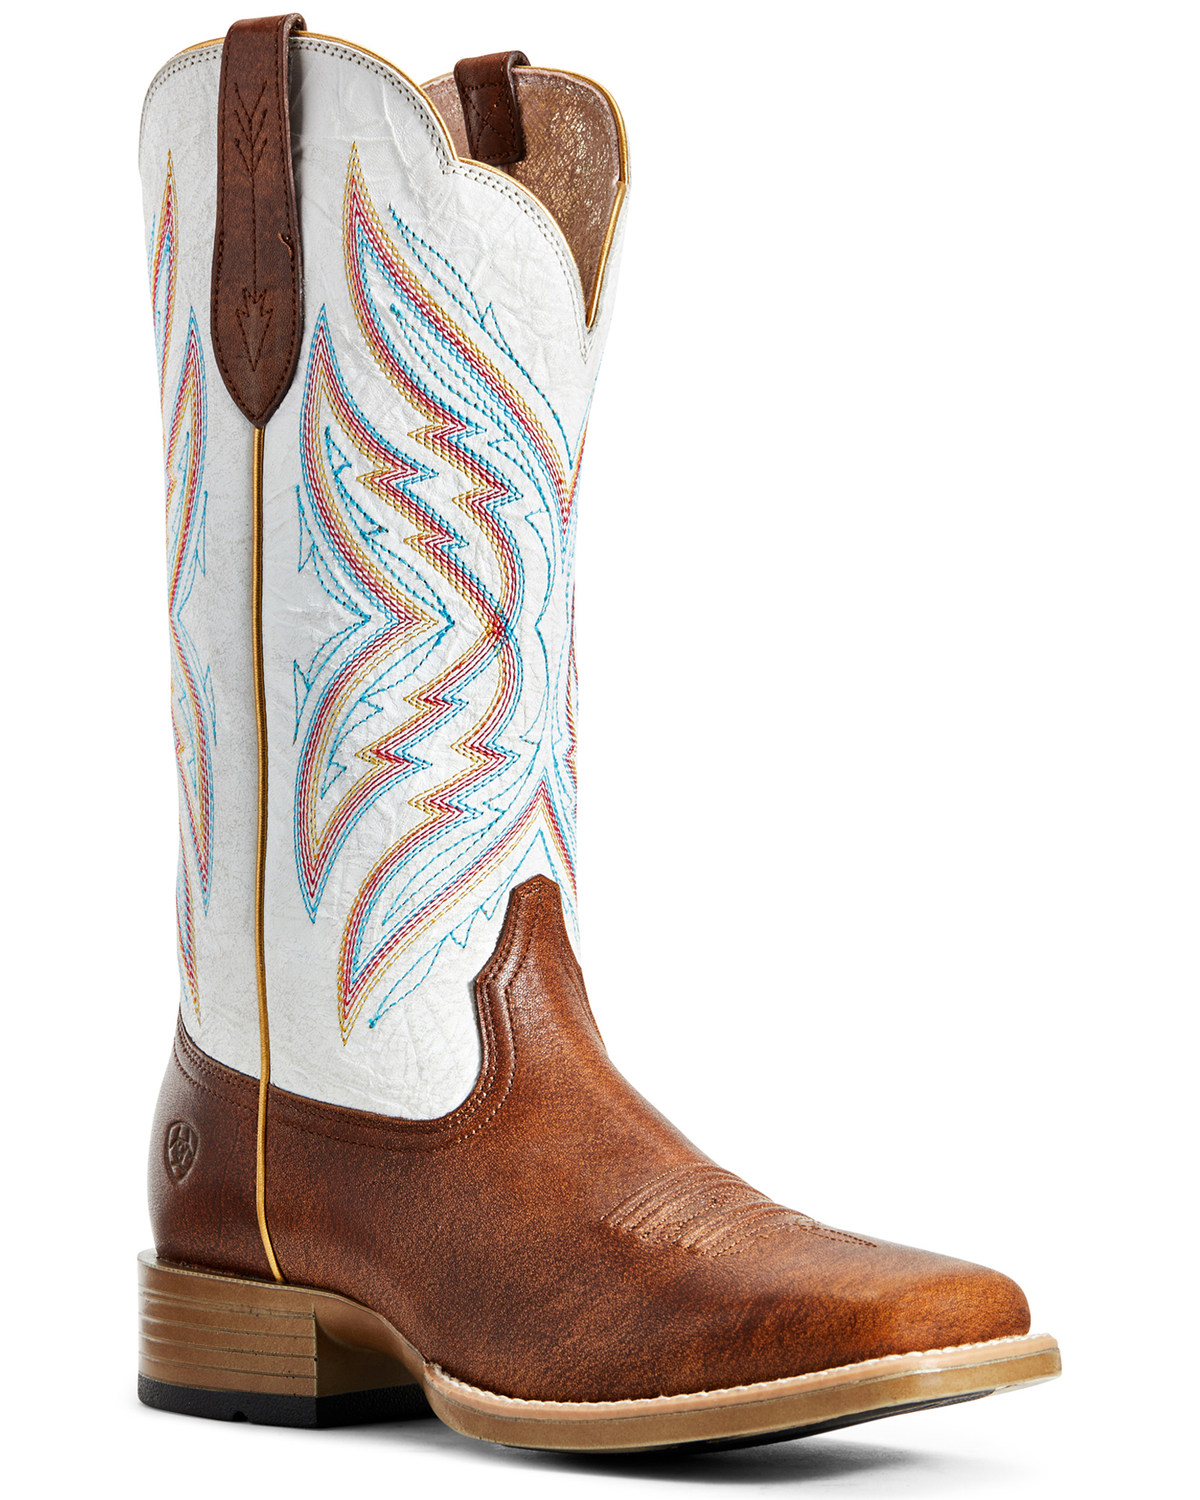 women's western boots wide